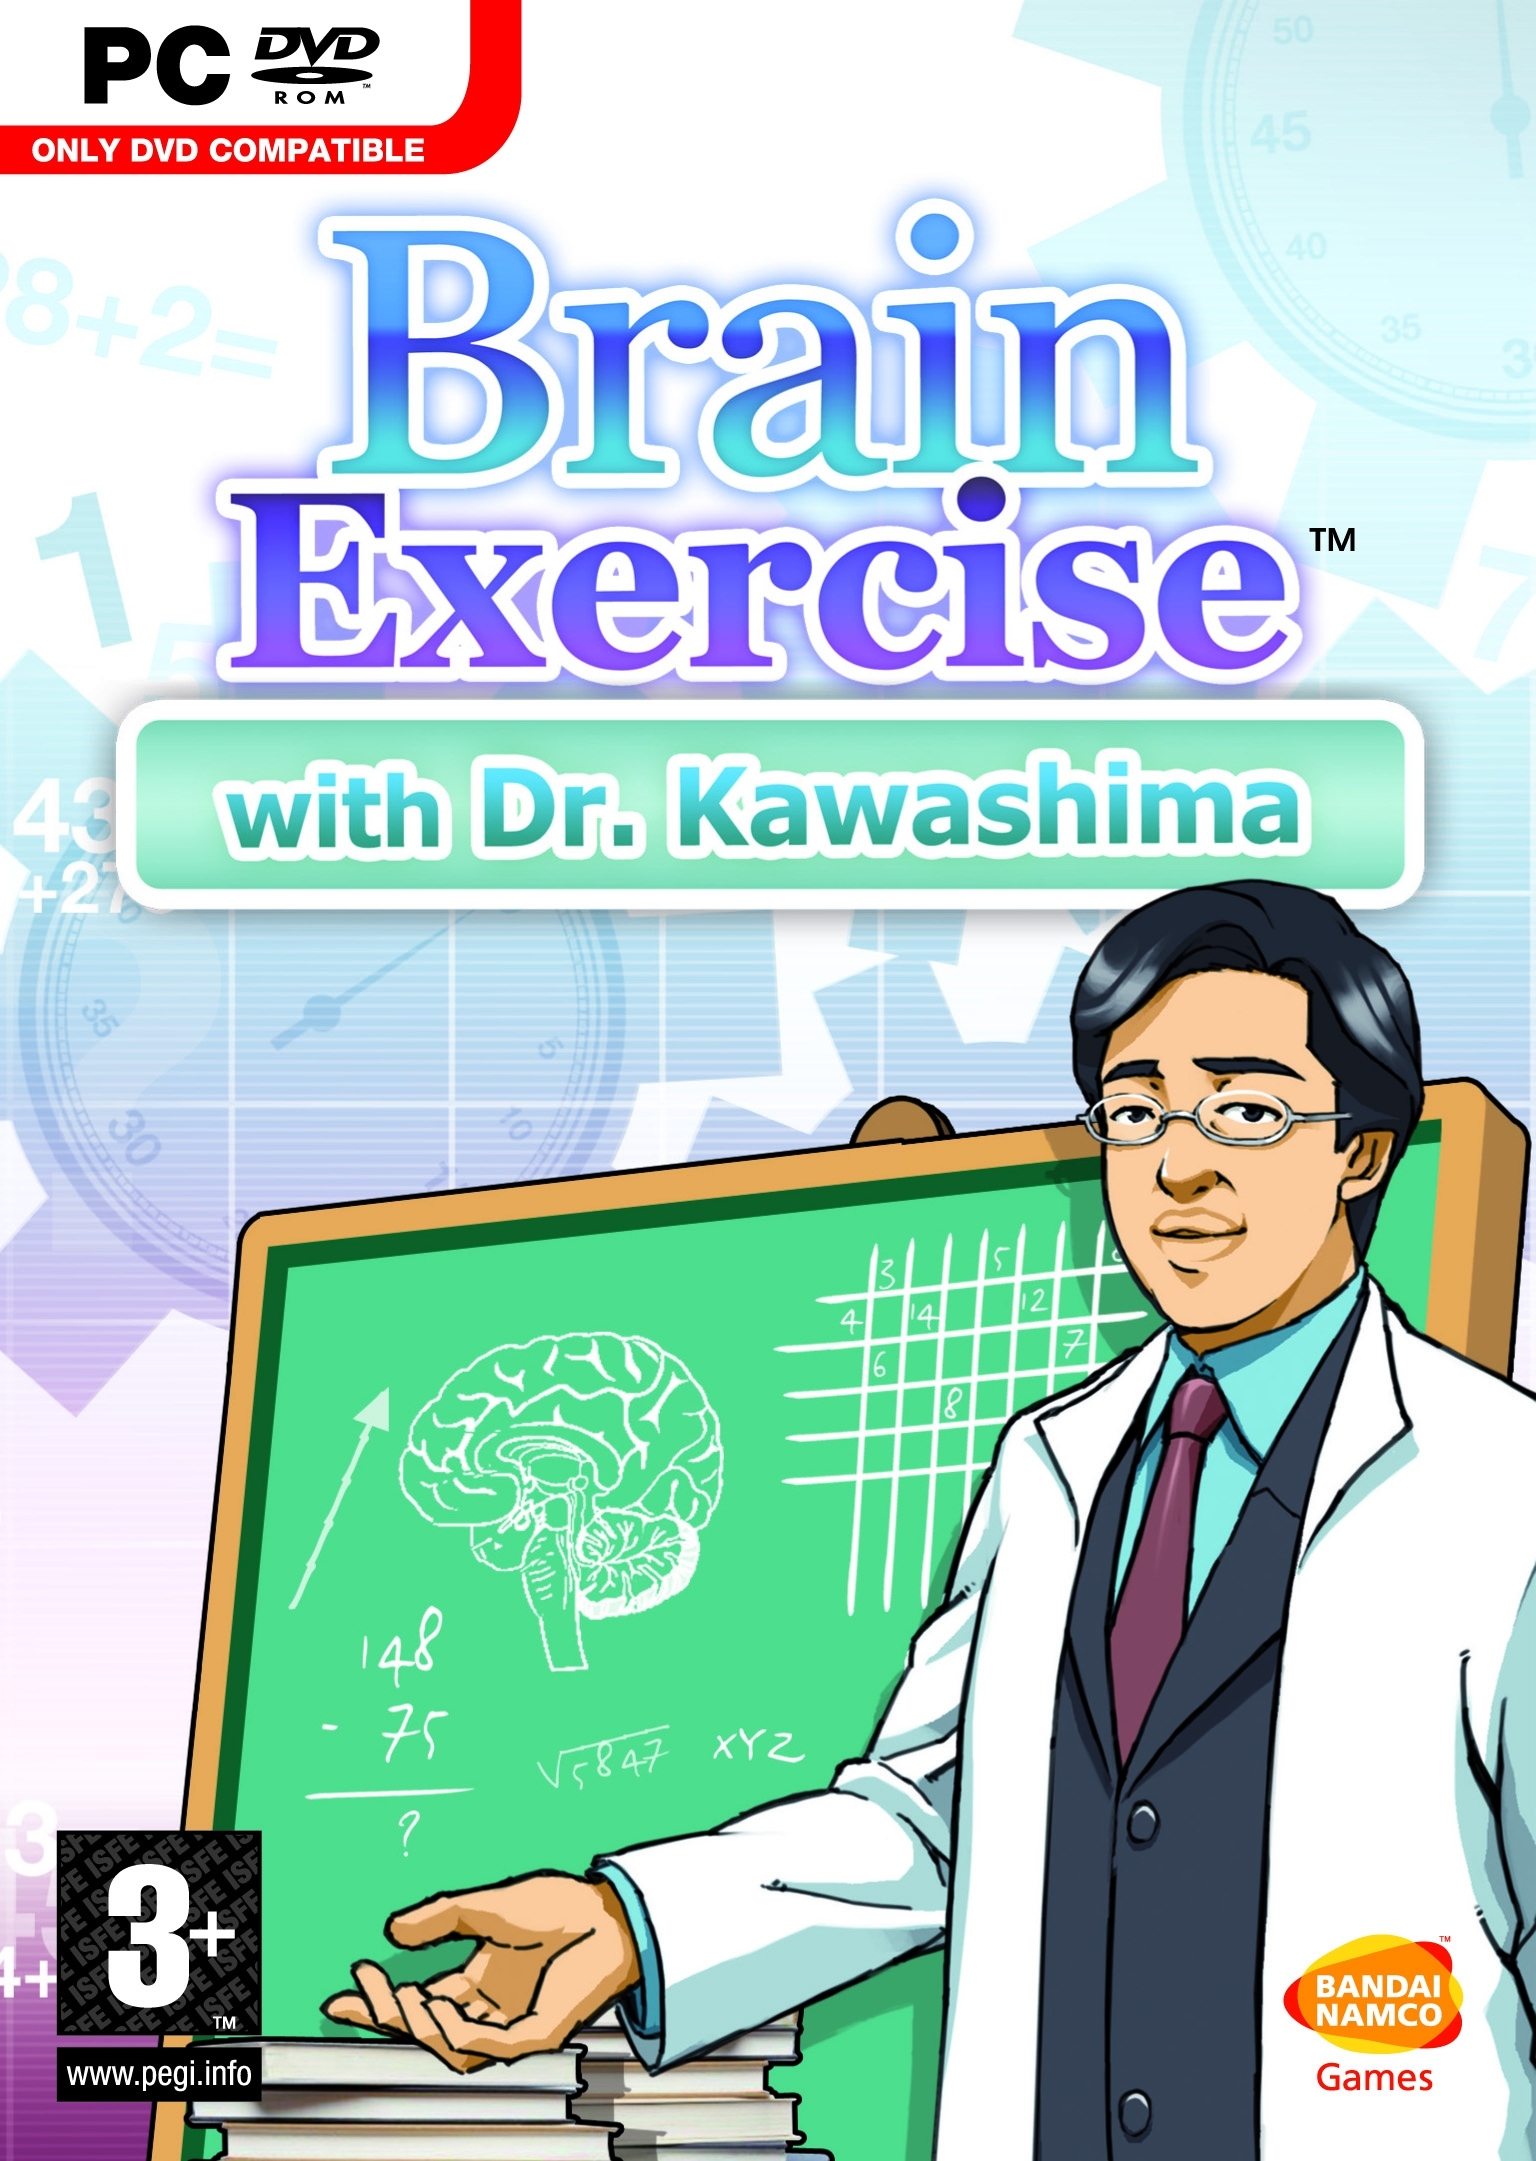 Brain Exercise met Dr. Kawashima